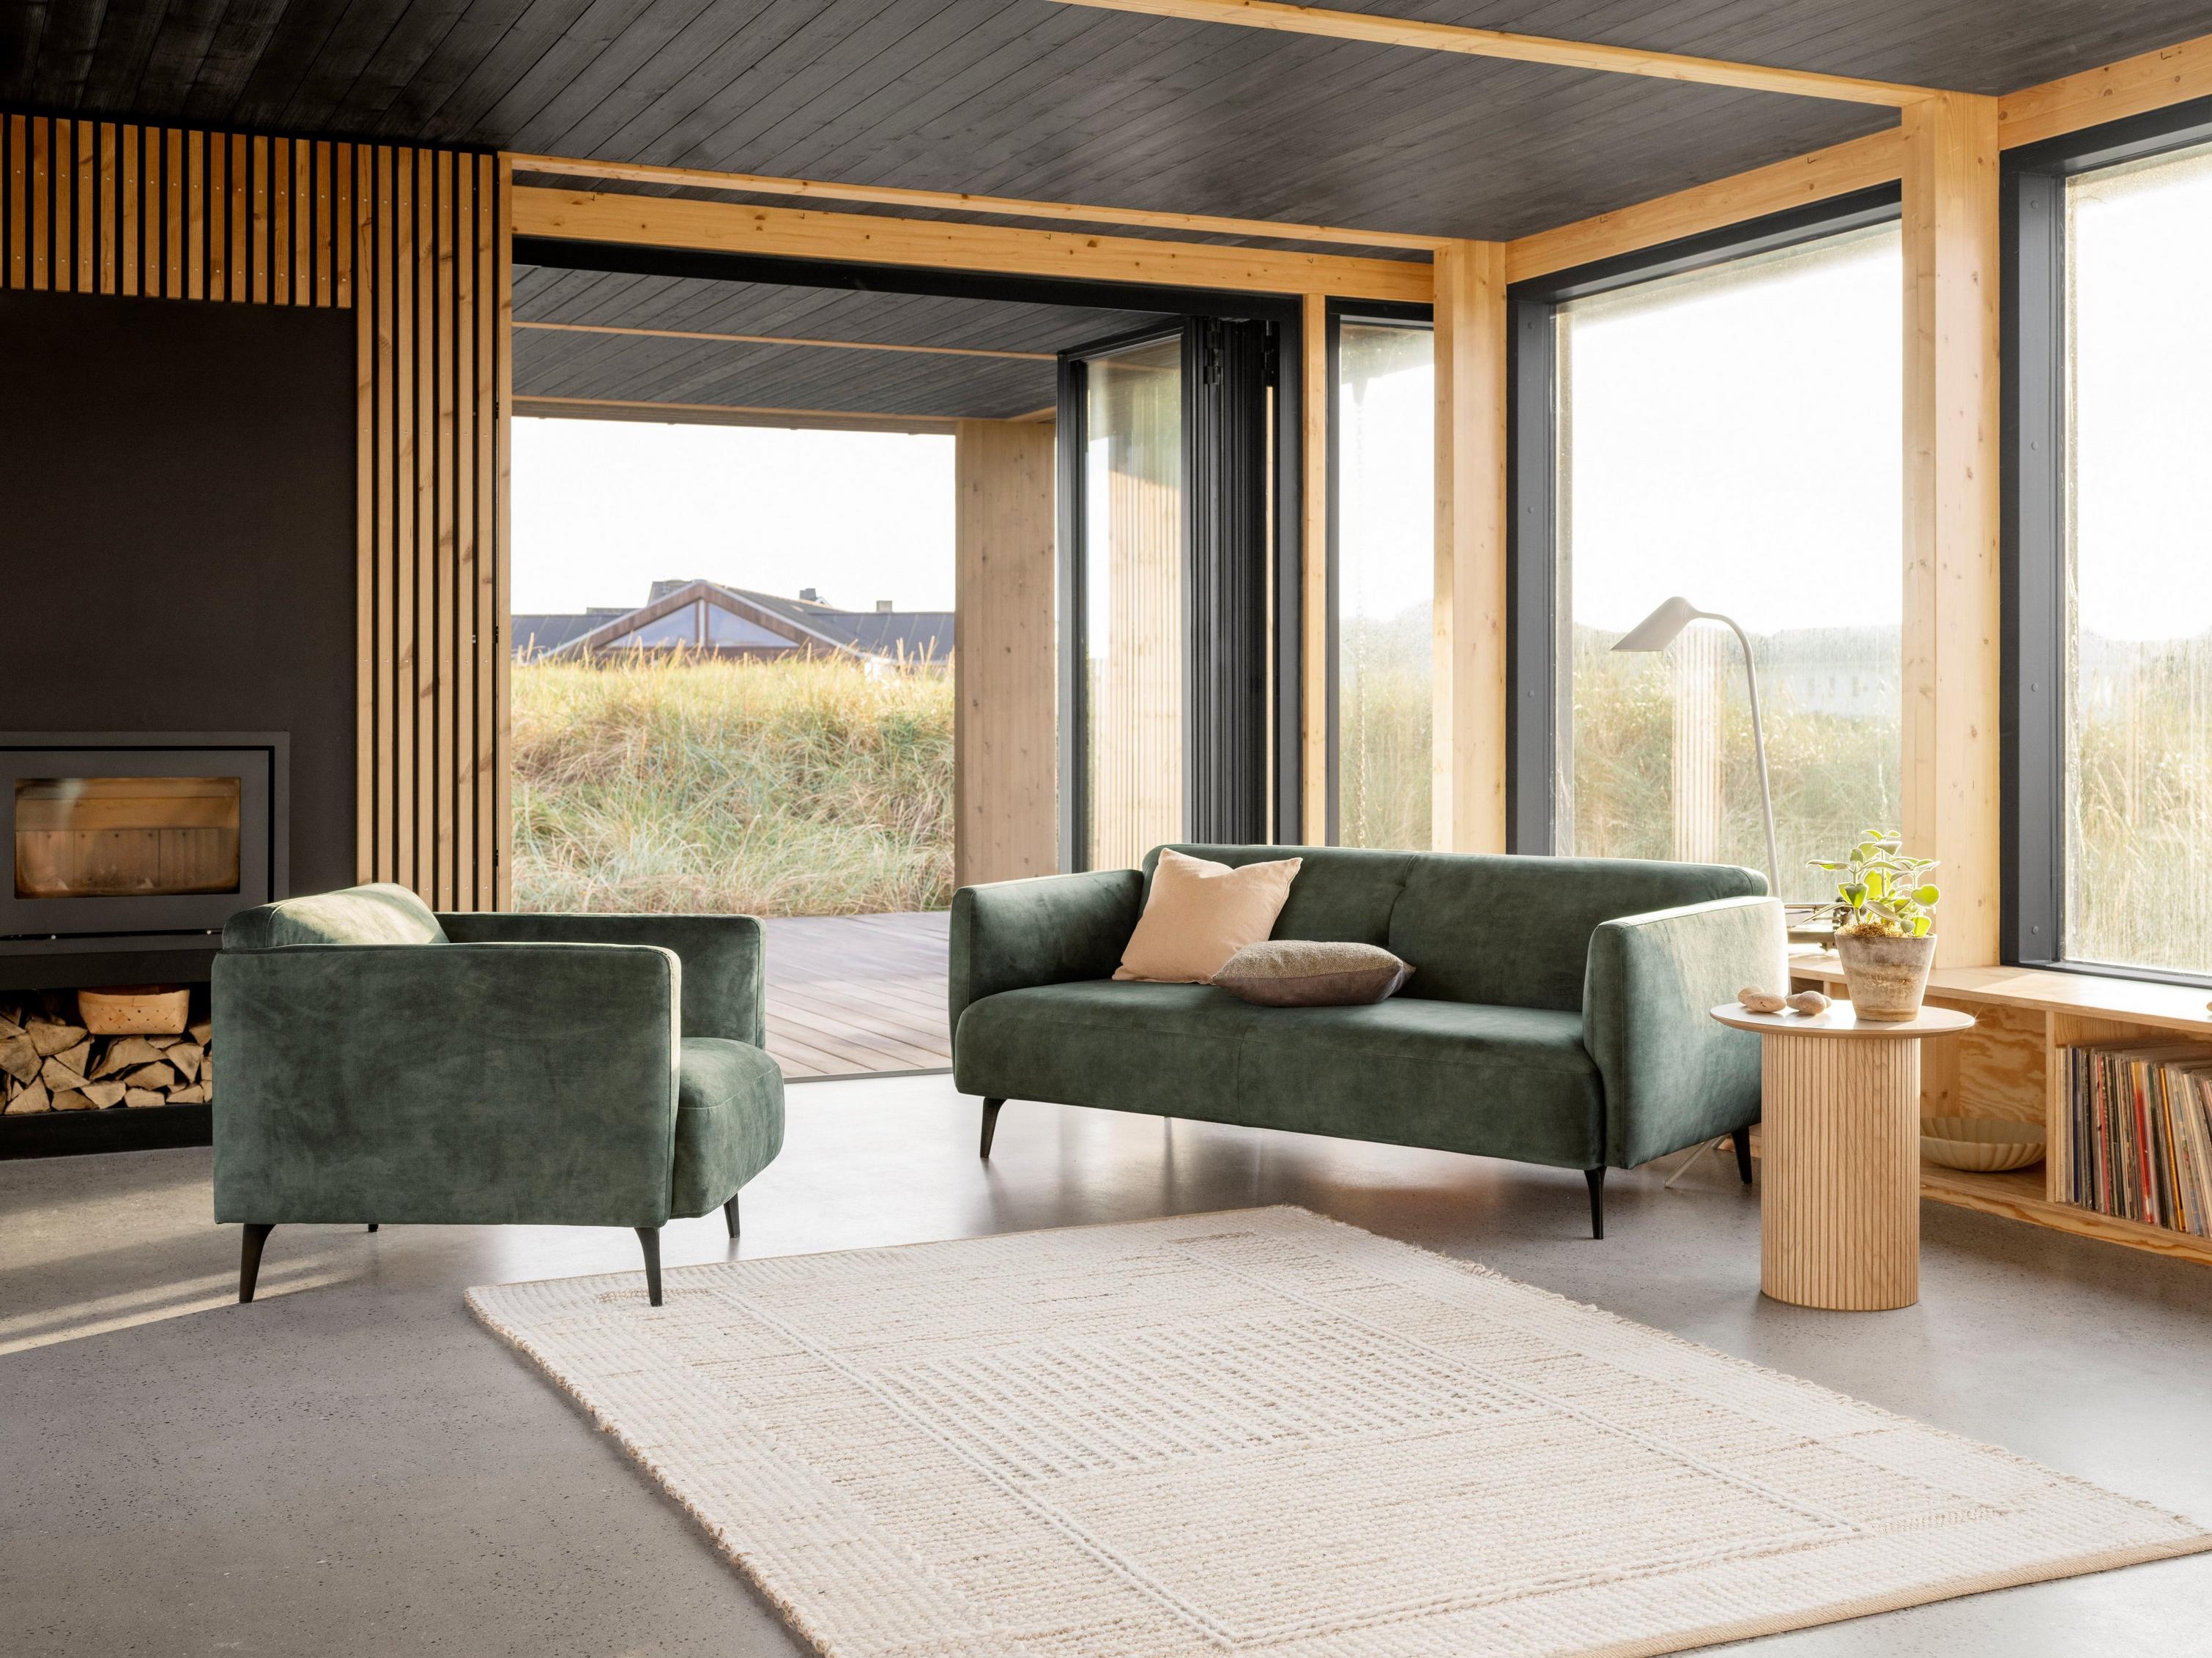 В этой гостиной теплых оттенков элегантный диван Modena и кресло в тон с обивкой из ткани Ravello пыльно-зеленого цвета расположены рядом с камином.